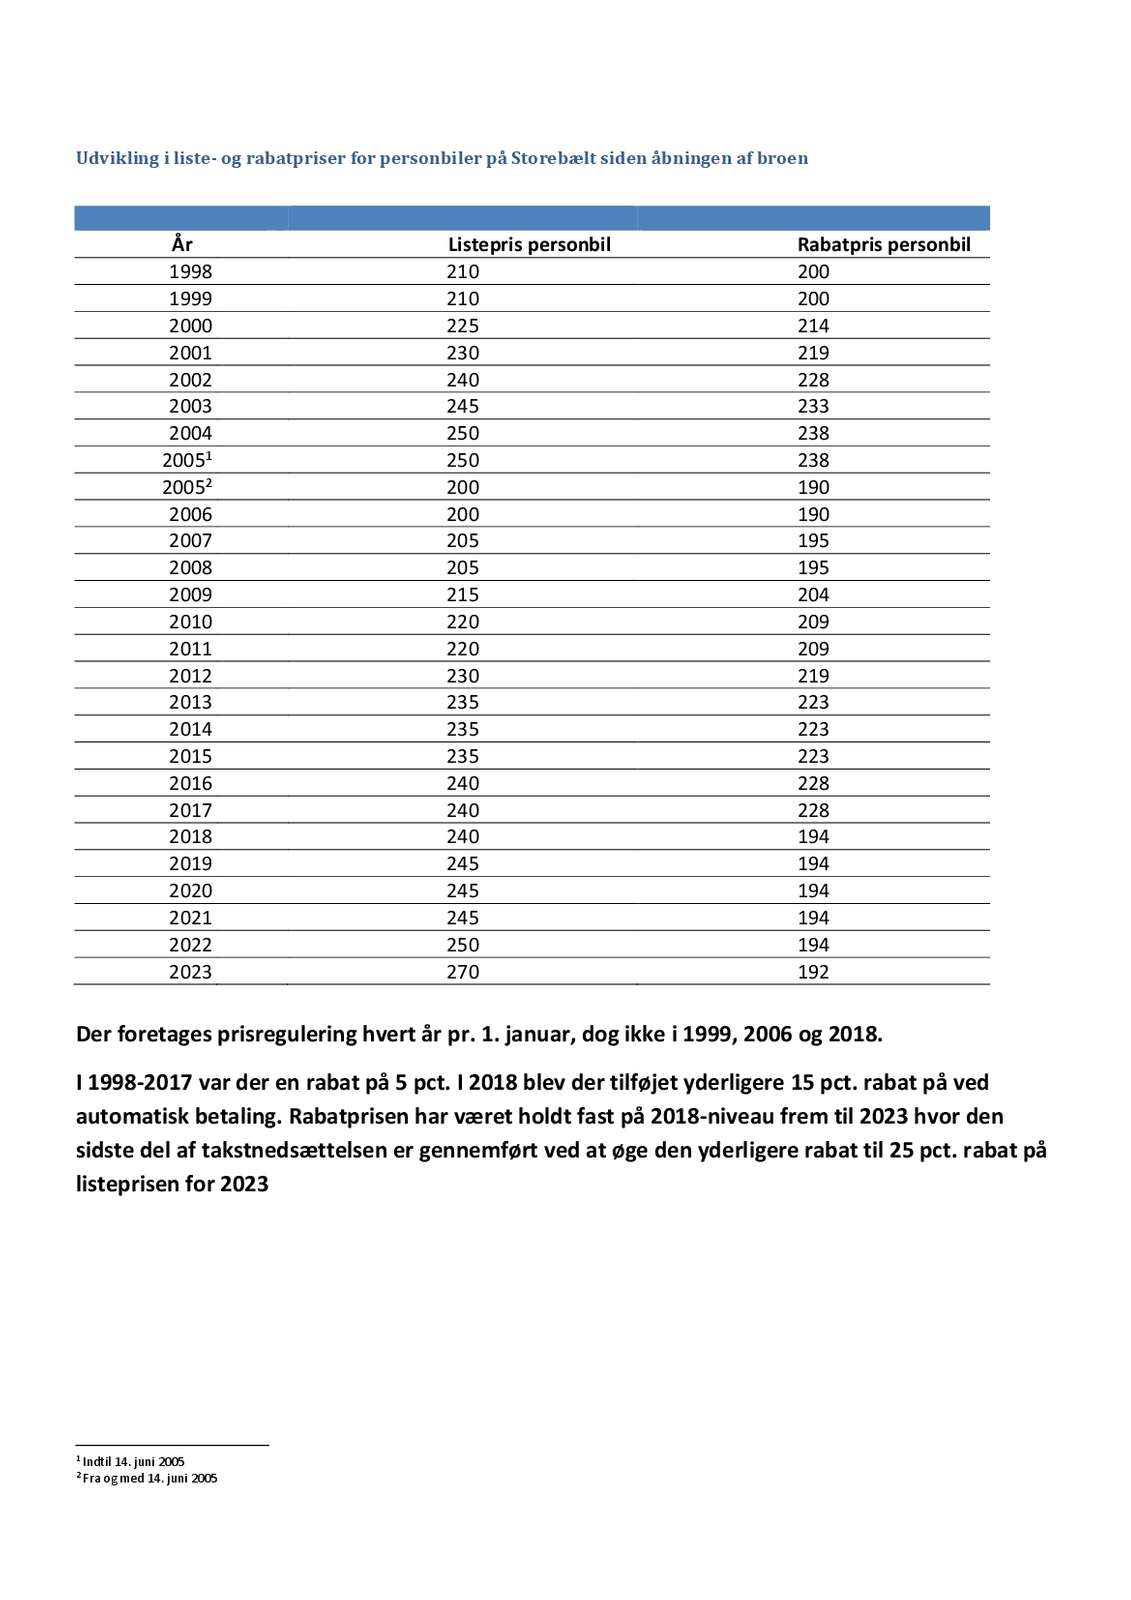 Udvikling i liste  og rabatpriser på Storebælt siden åbning   personbiler